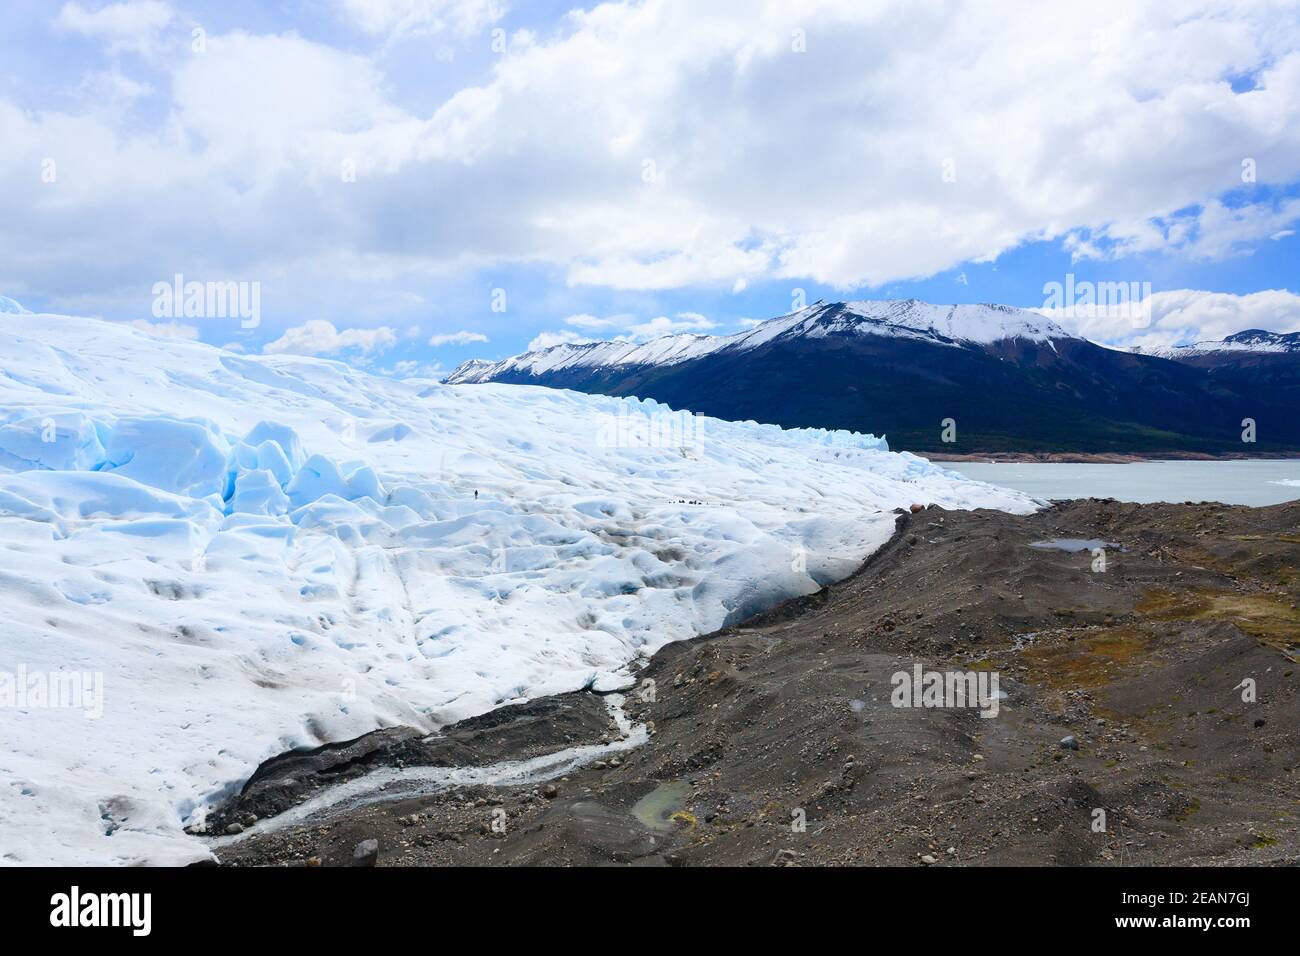 Perito Moreno glacier view, Patagonia scenery, Argentina Stock Photo